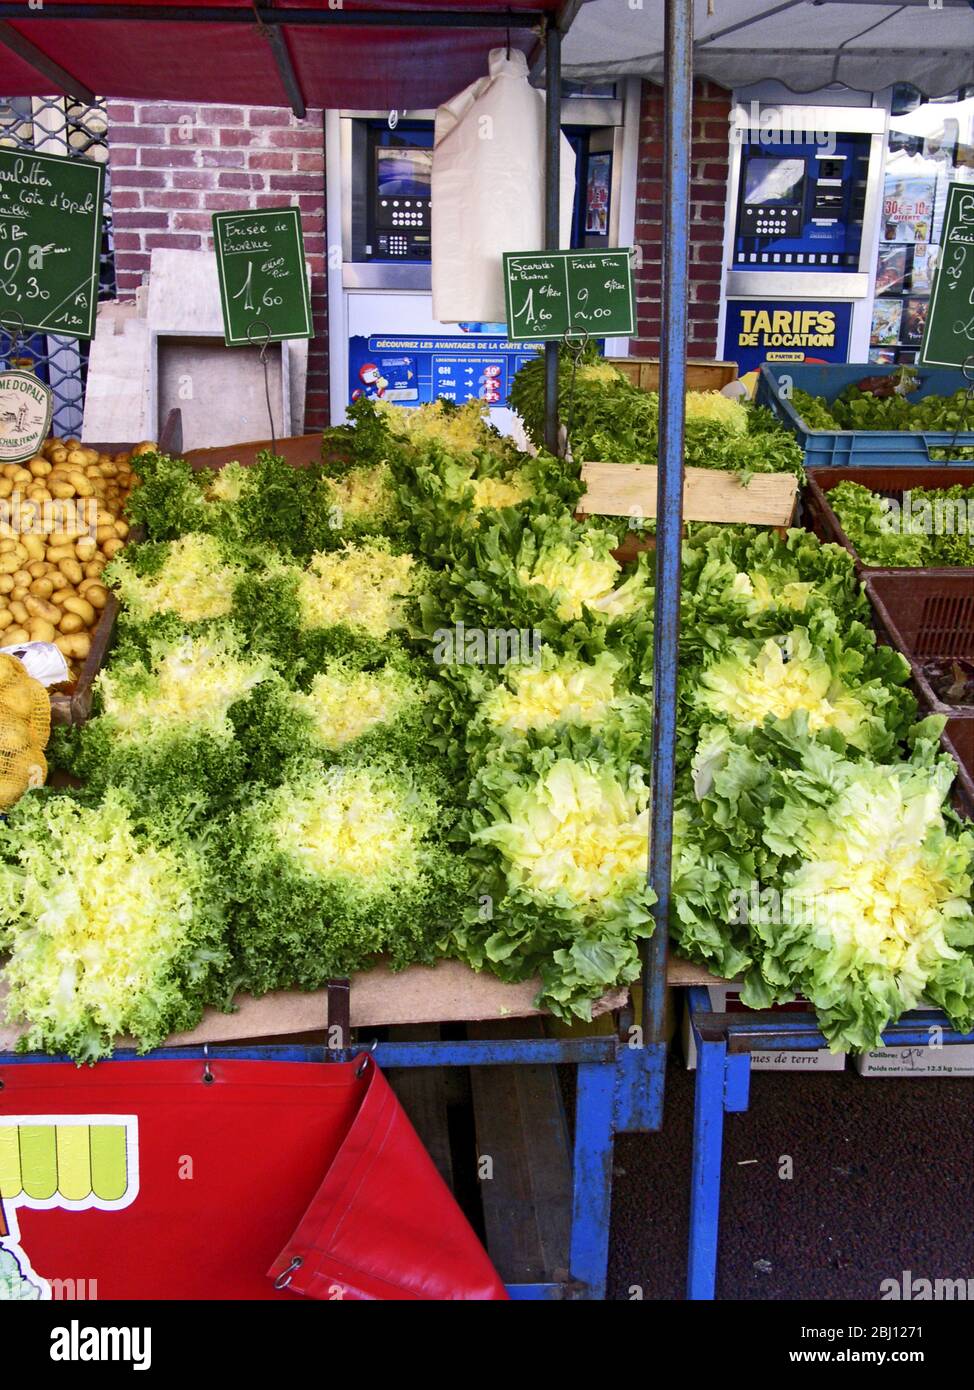 Französischer Marktstand mit Eskarolensalat. Nordfrankreich, Hesdin - Stockfoto